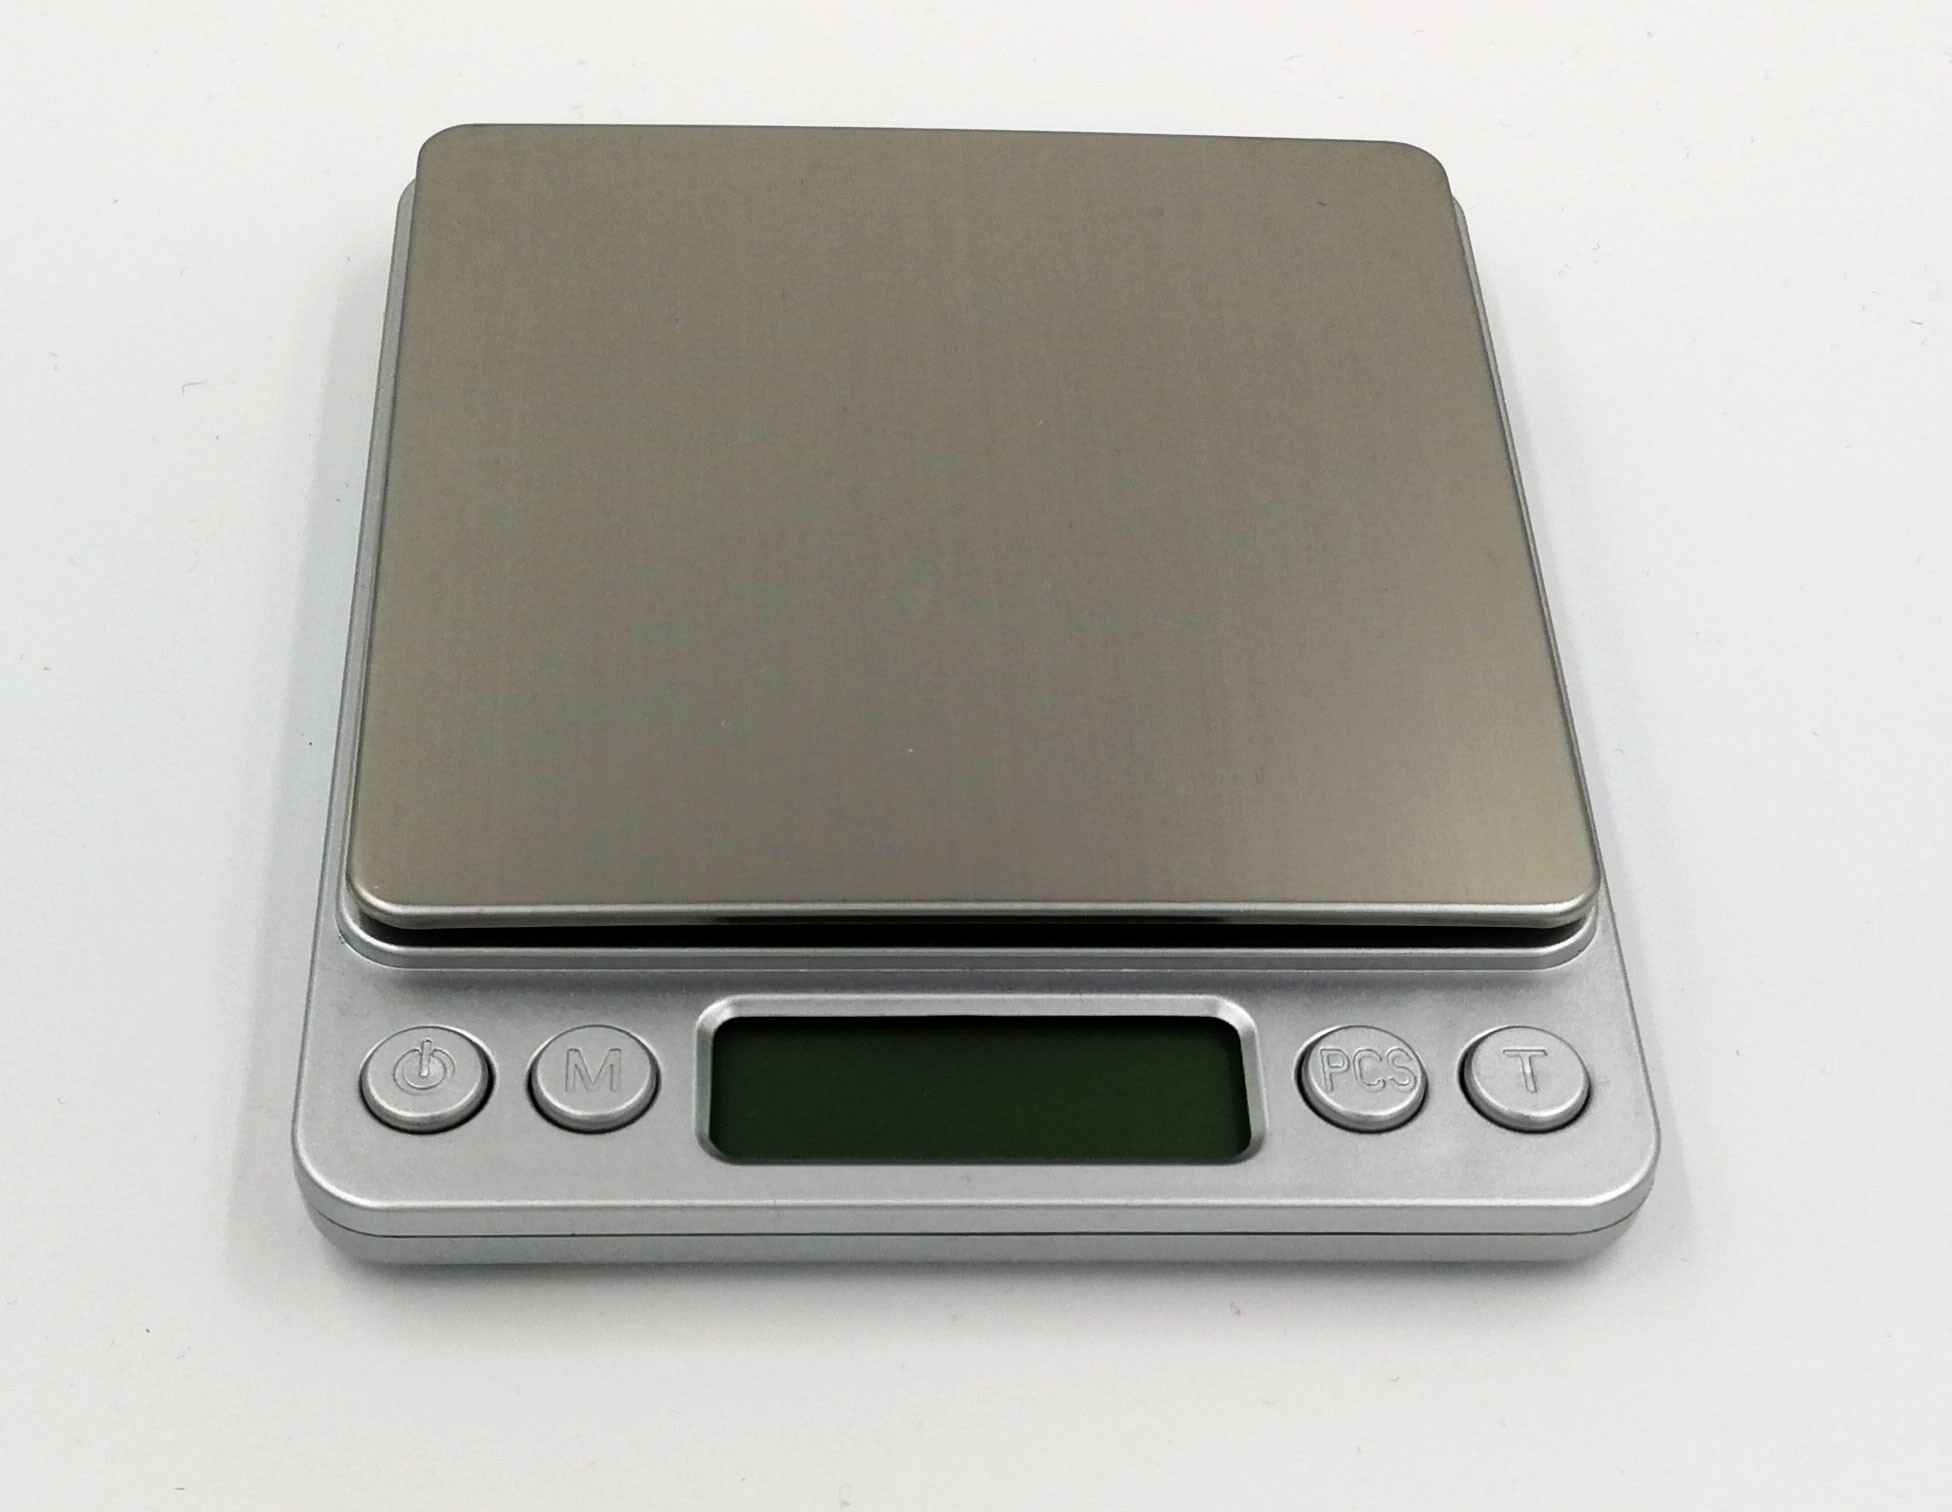 KL-I2000 USB digitální váha do 2kg s přesností 0,1g